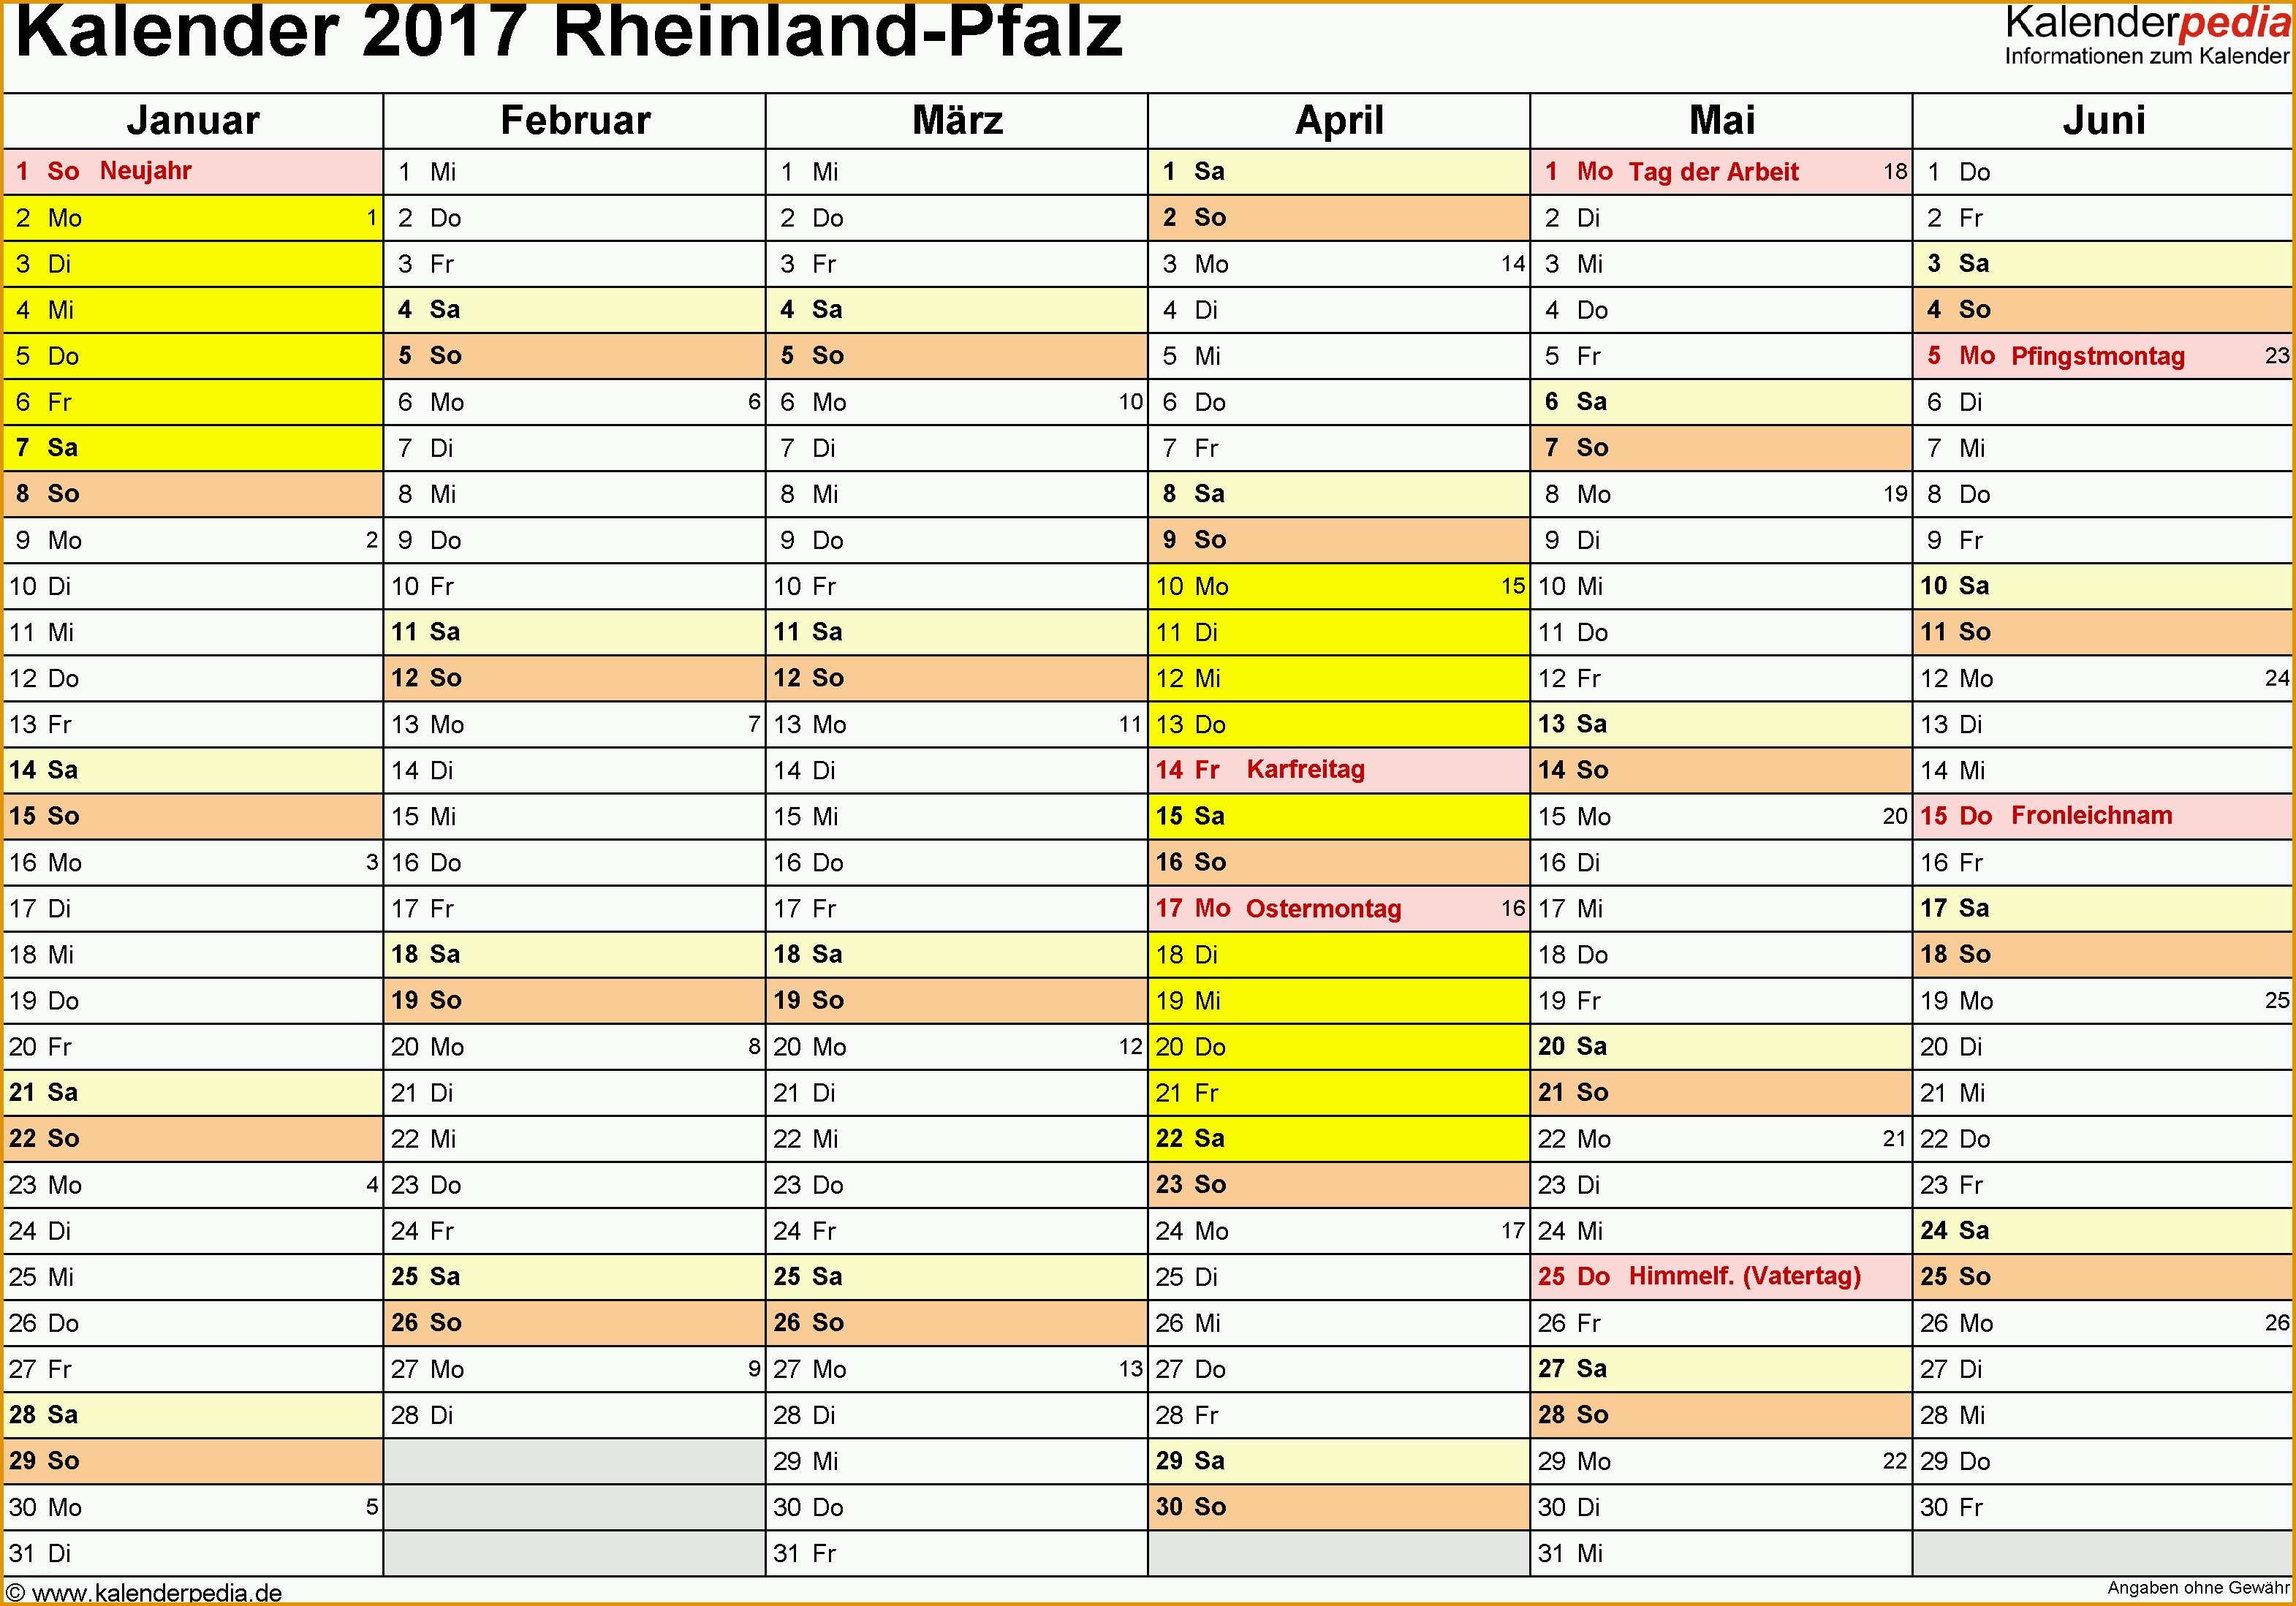 kalender 2017 rheinland pfalz excel vorlagen